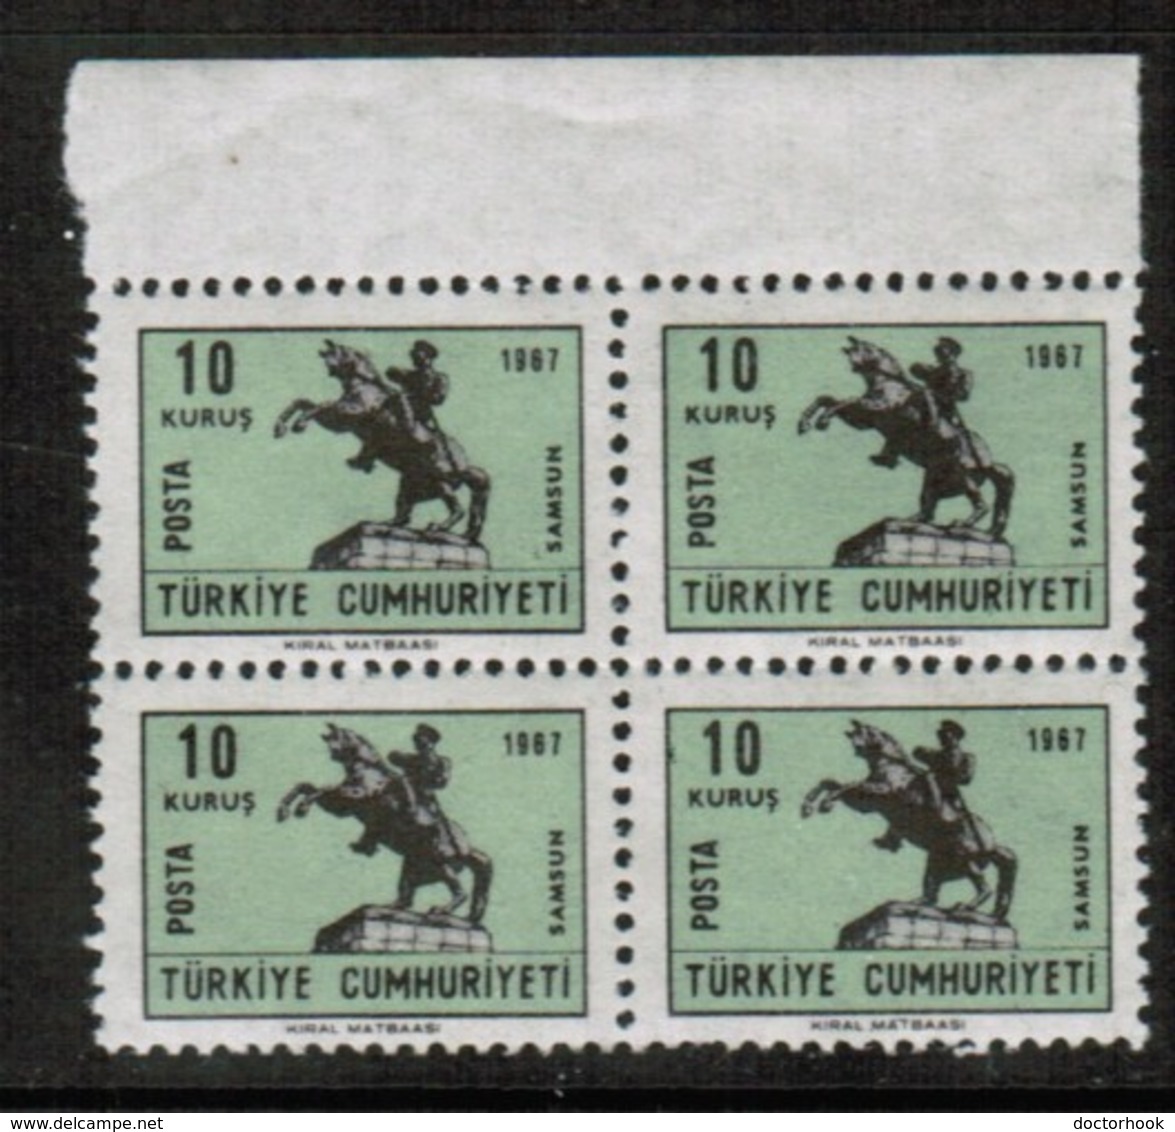 TURKEY   Scott # 1729 B** VF MINT NH BLOCK Of 4 (Stamp Scan # 442) - Blocks & Sheetlets